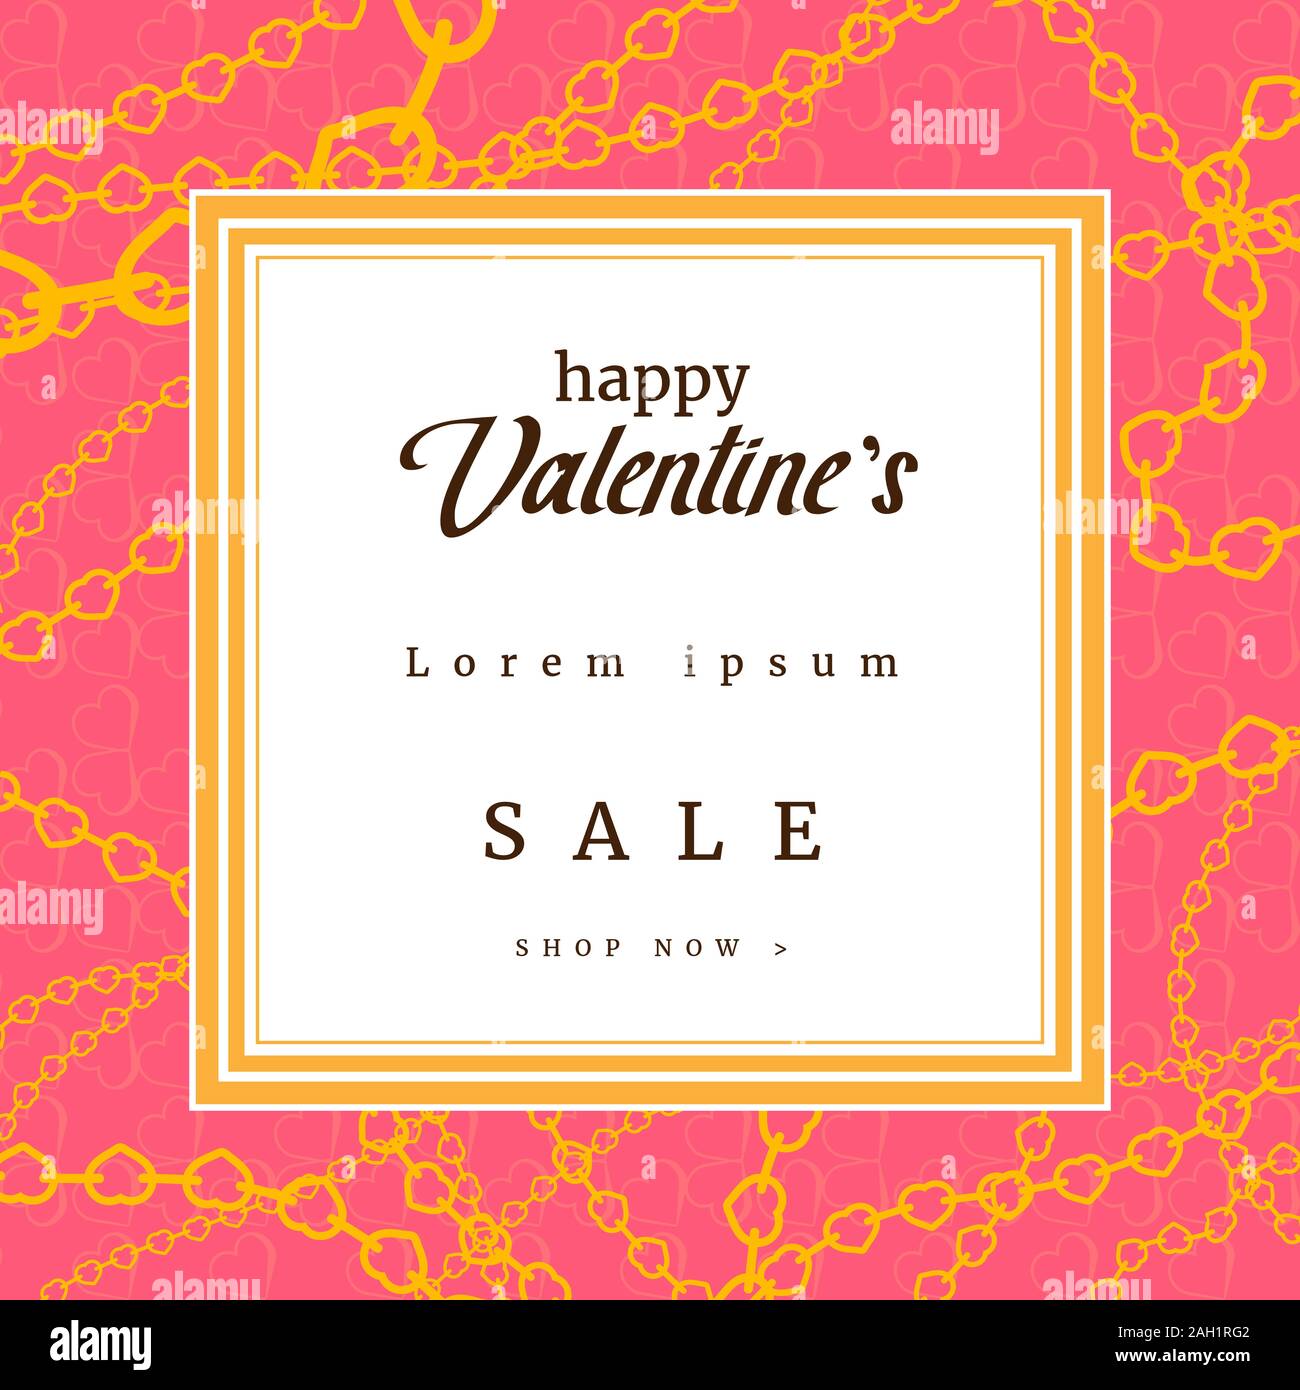 Felice il giorno di San Valentino offerta di vendita banner, poster o flyer design con cuore giallo catene sfondo rosa. Cornice quadrata. Romantico modello di pagina di intestazione. Illustrazione Vettoriale